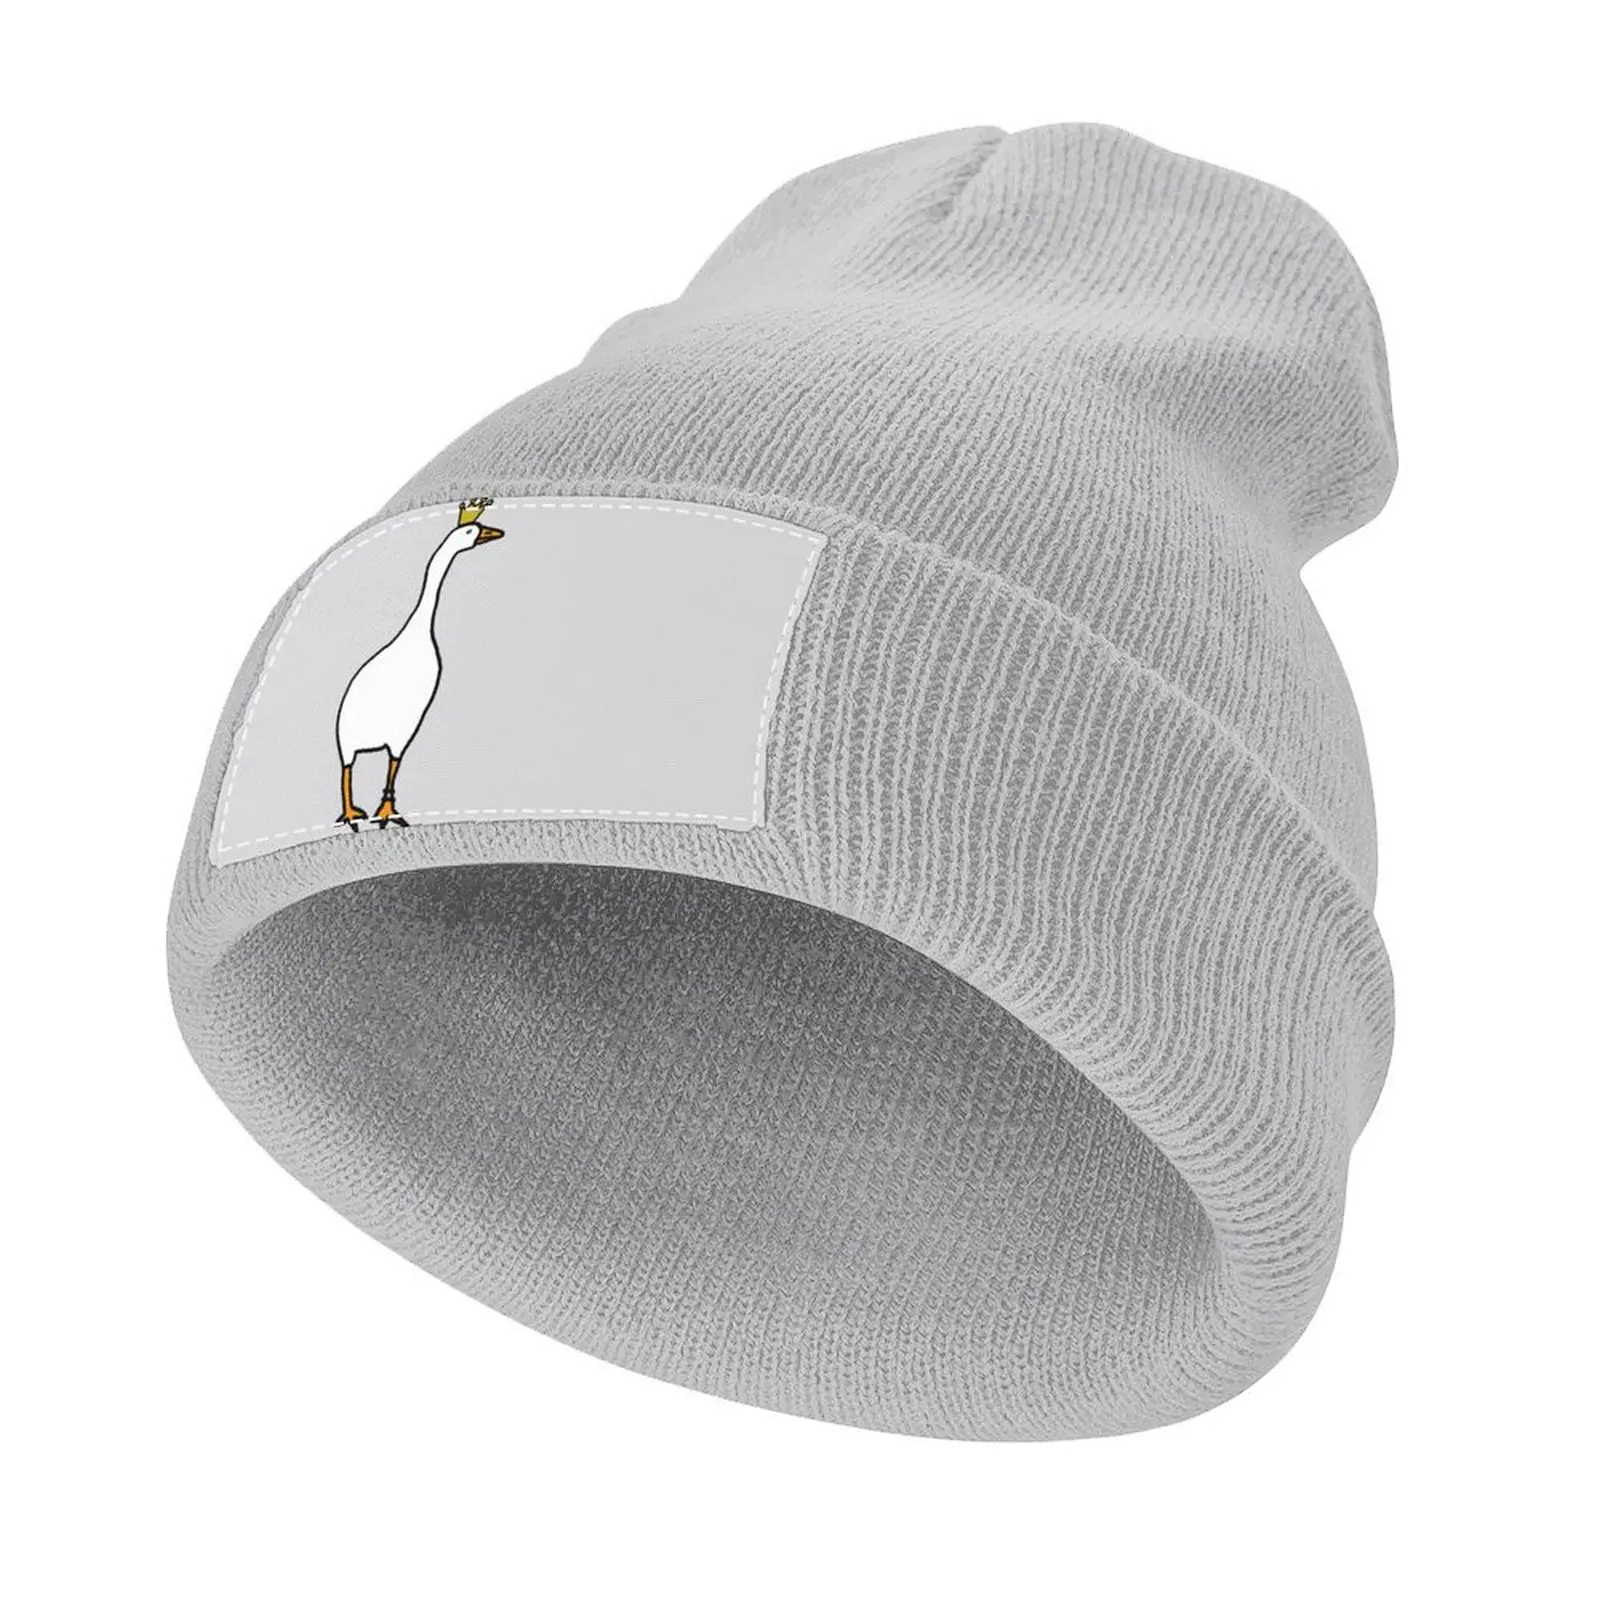 Weiße Gans trägt gestohlene Krone Strick mütze männliche Wärme visier Wild ball Hut Luxus Mann Hut Hüte für Männer Frauen